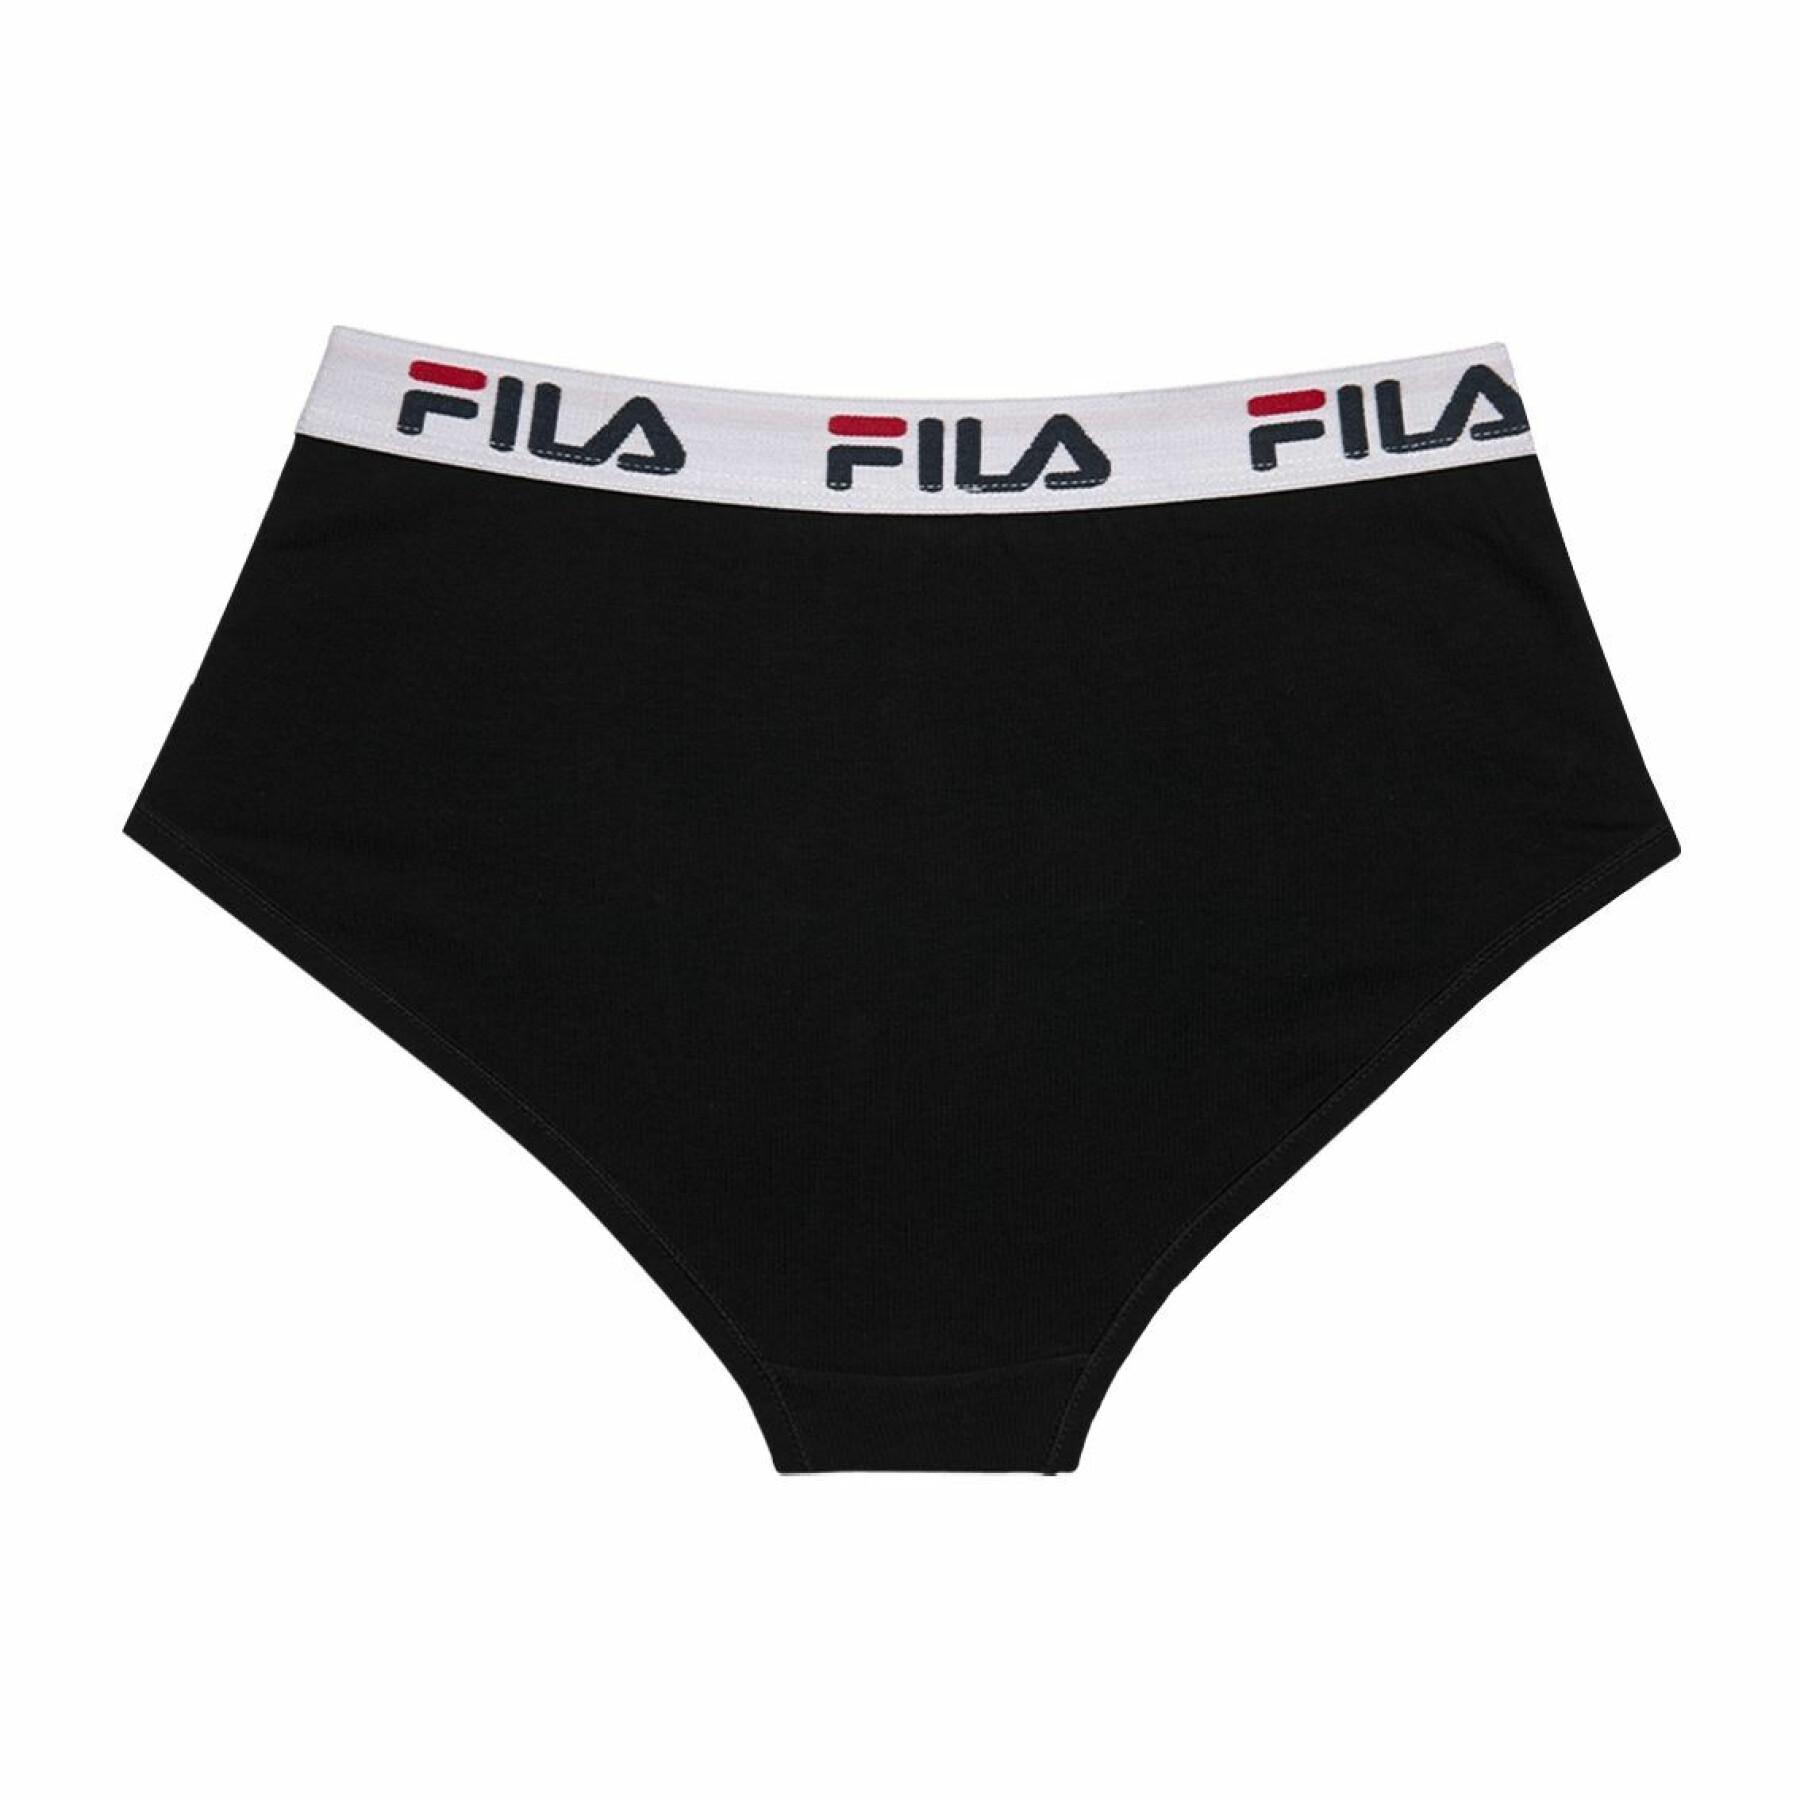 Women's cotton panties Fila FU6044